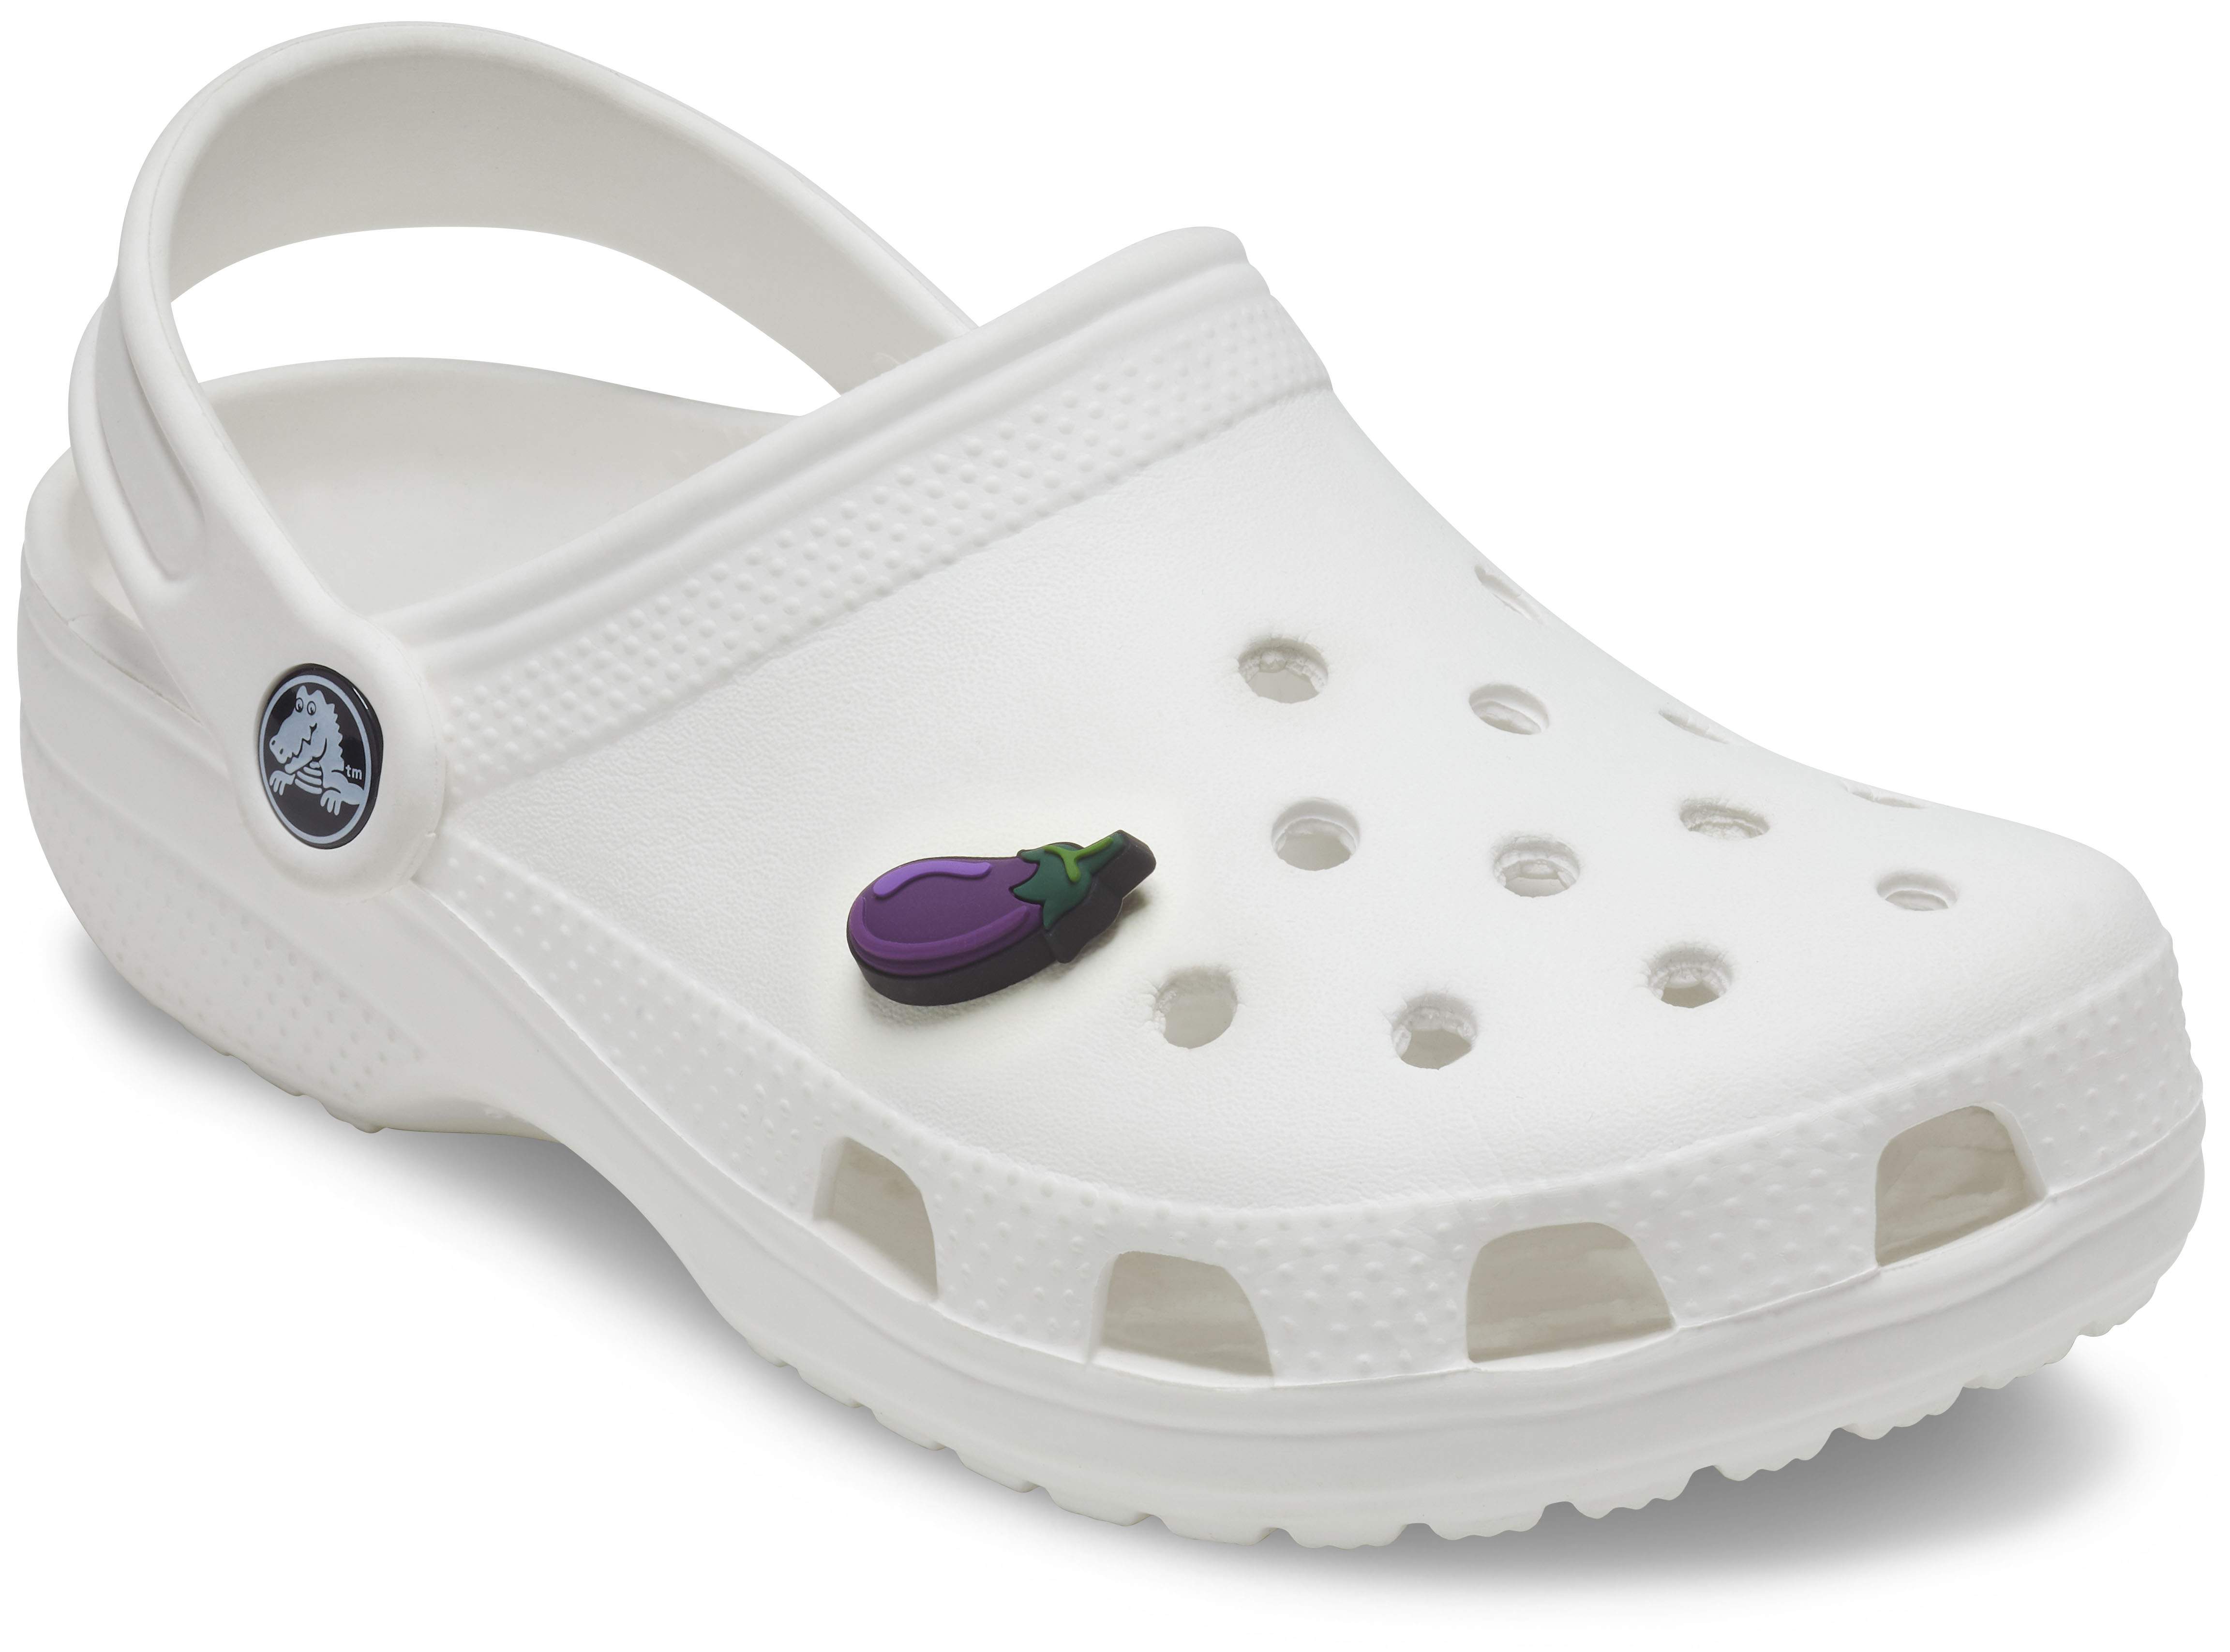 Aubergine Jibbitz Shoe Charm - Crocs